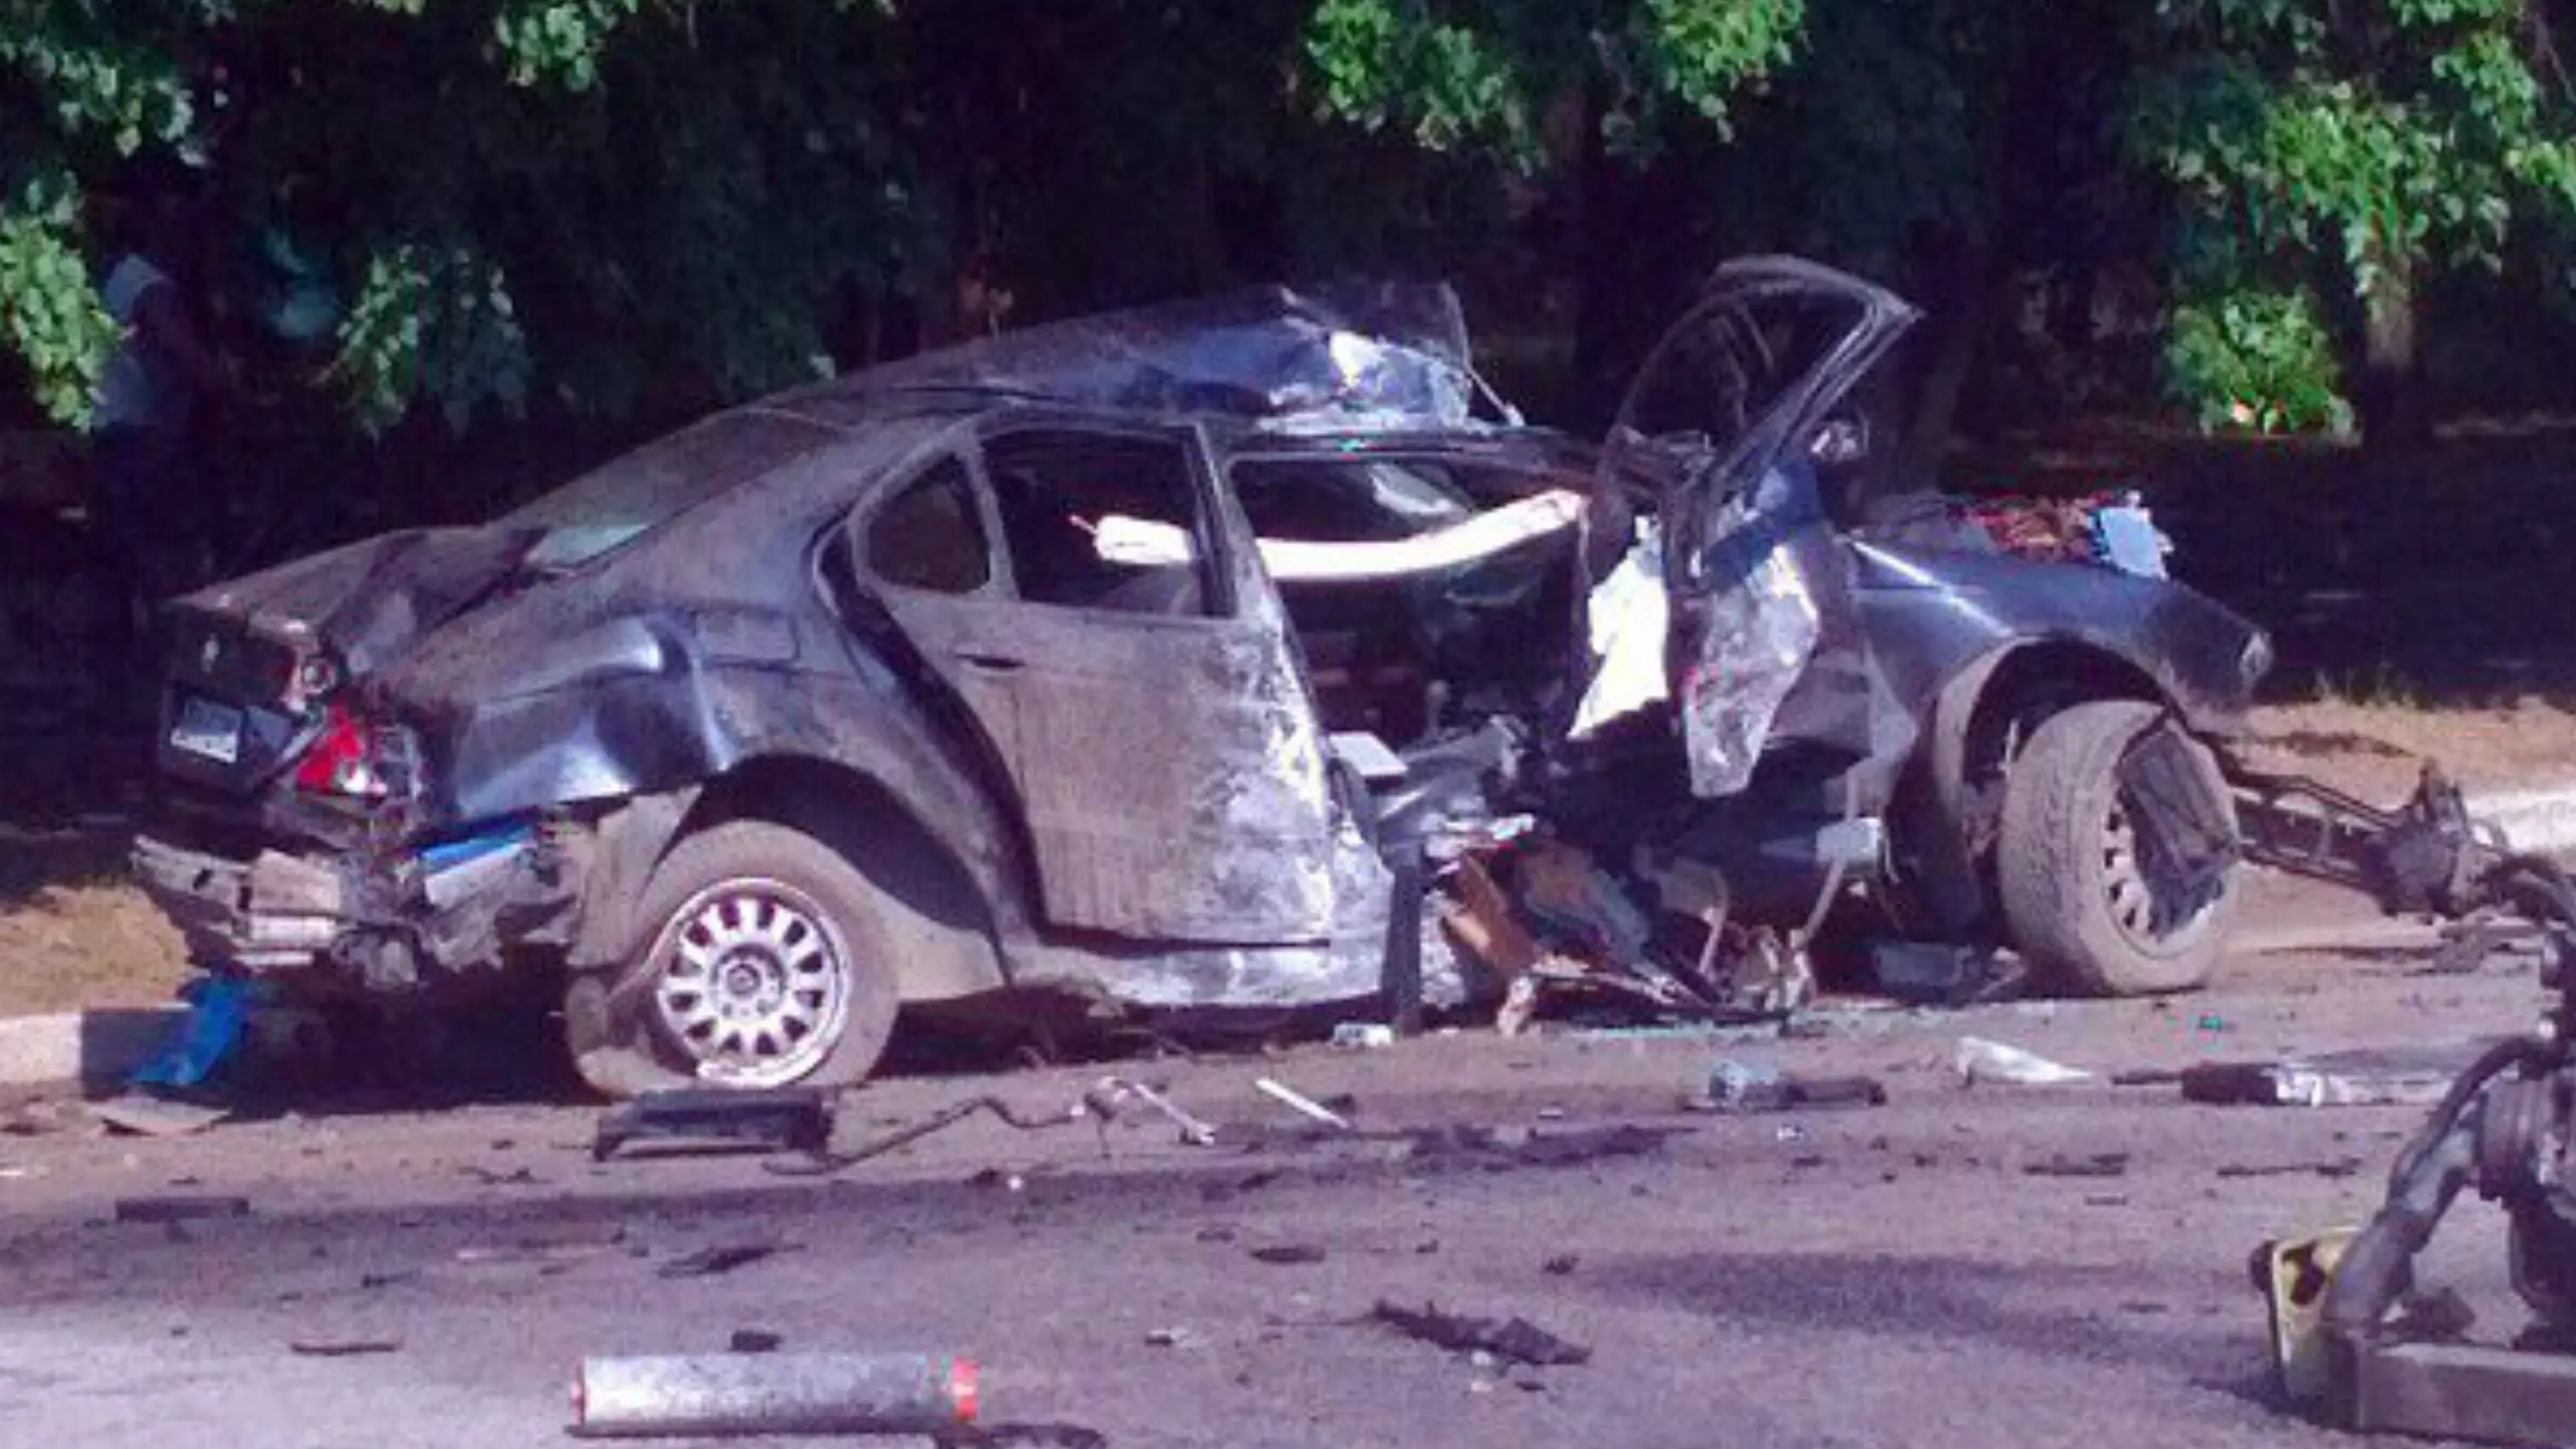 Mobil BMW yang ditumpangi ratu kecantikan di Ukraina saat kecelakaan ketika mereka video di Instagram. (east2west)